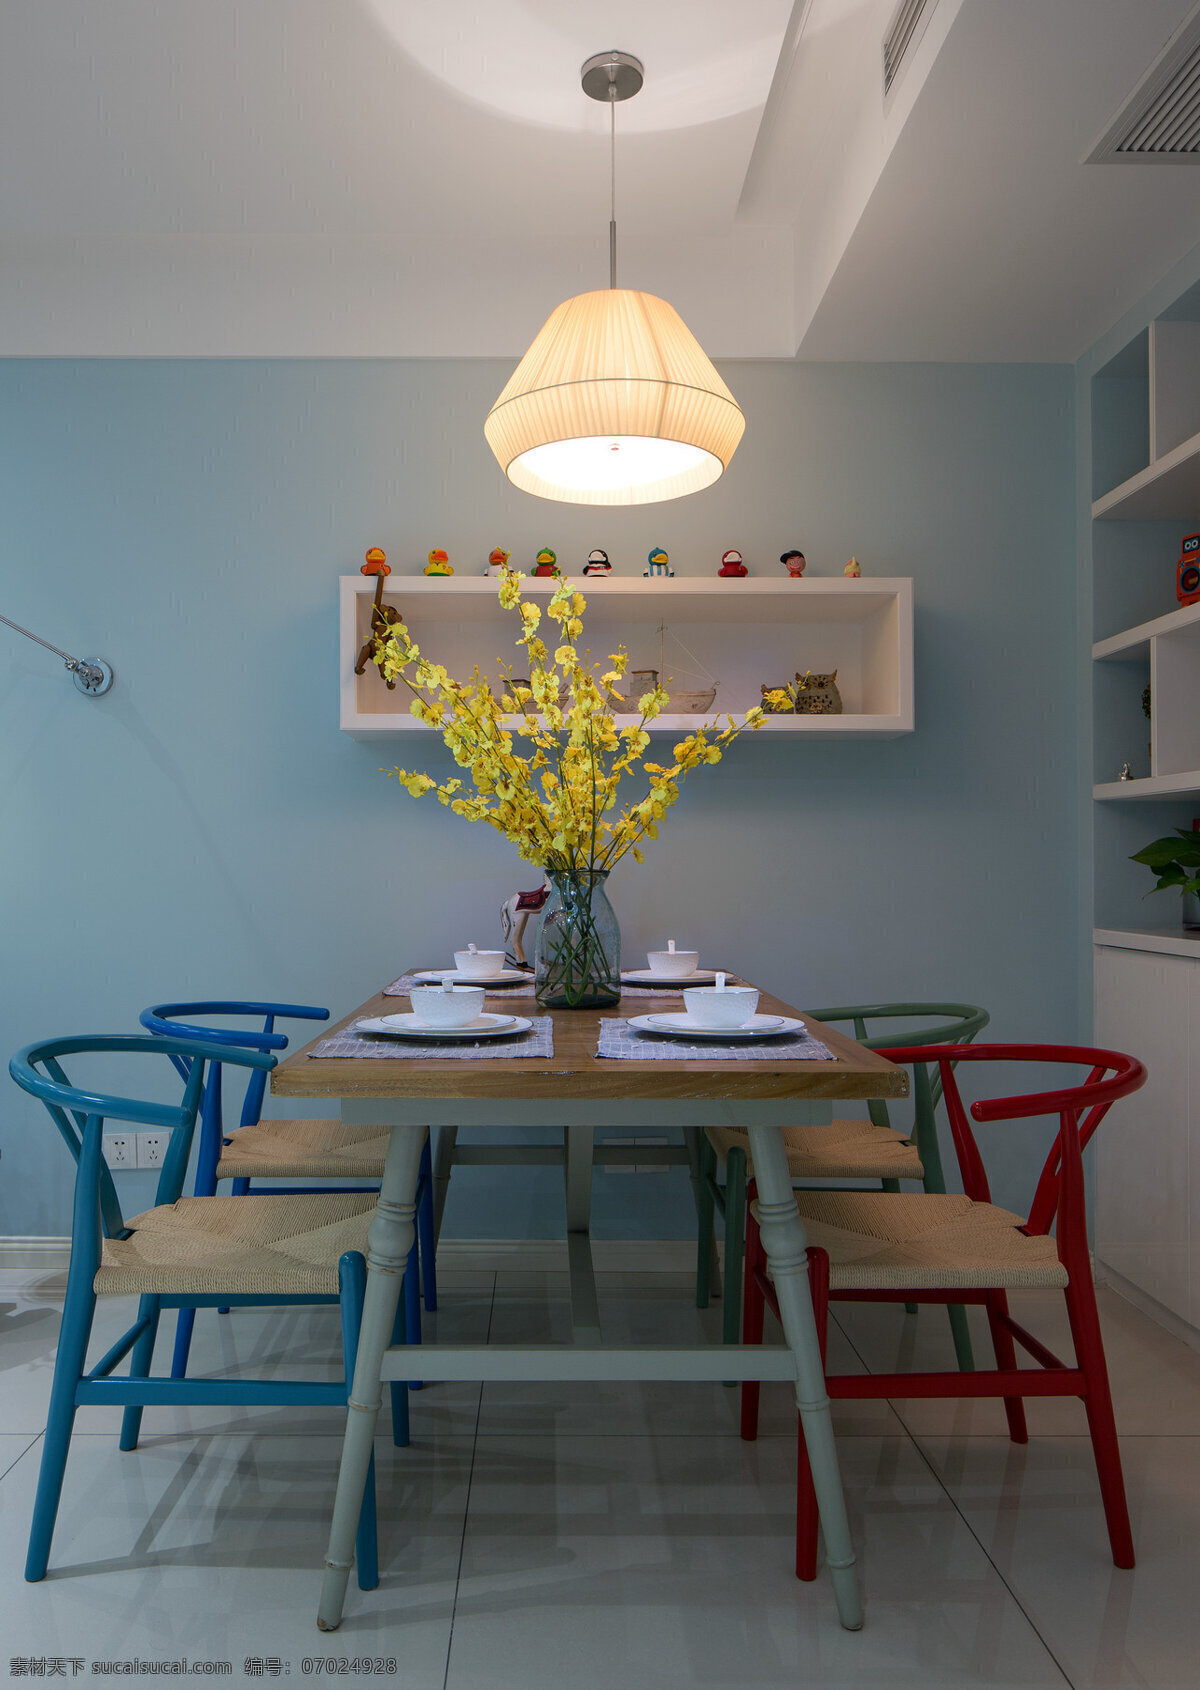 现代 时尚 客厅 暖 黄色 吊灯 室内装修 效果图 灰色地板 客厅装修 木制餐桌 浅蓝色背景墙